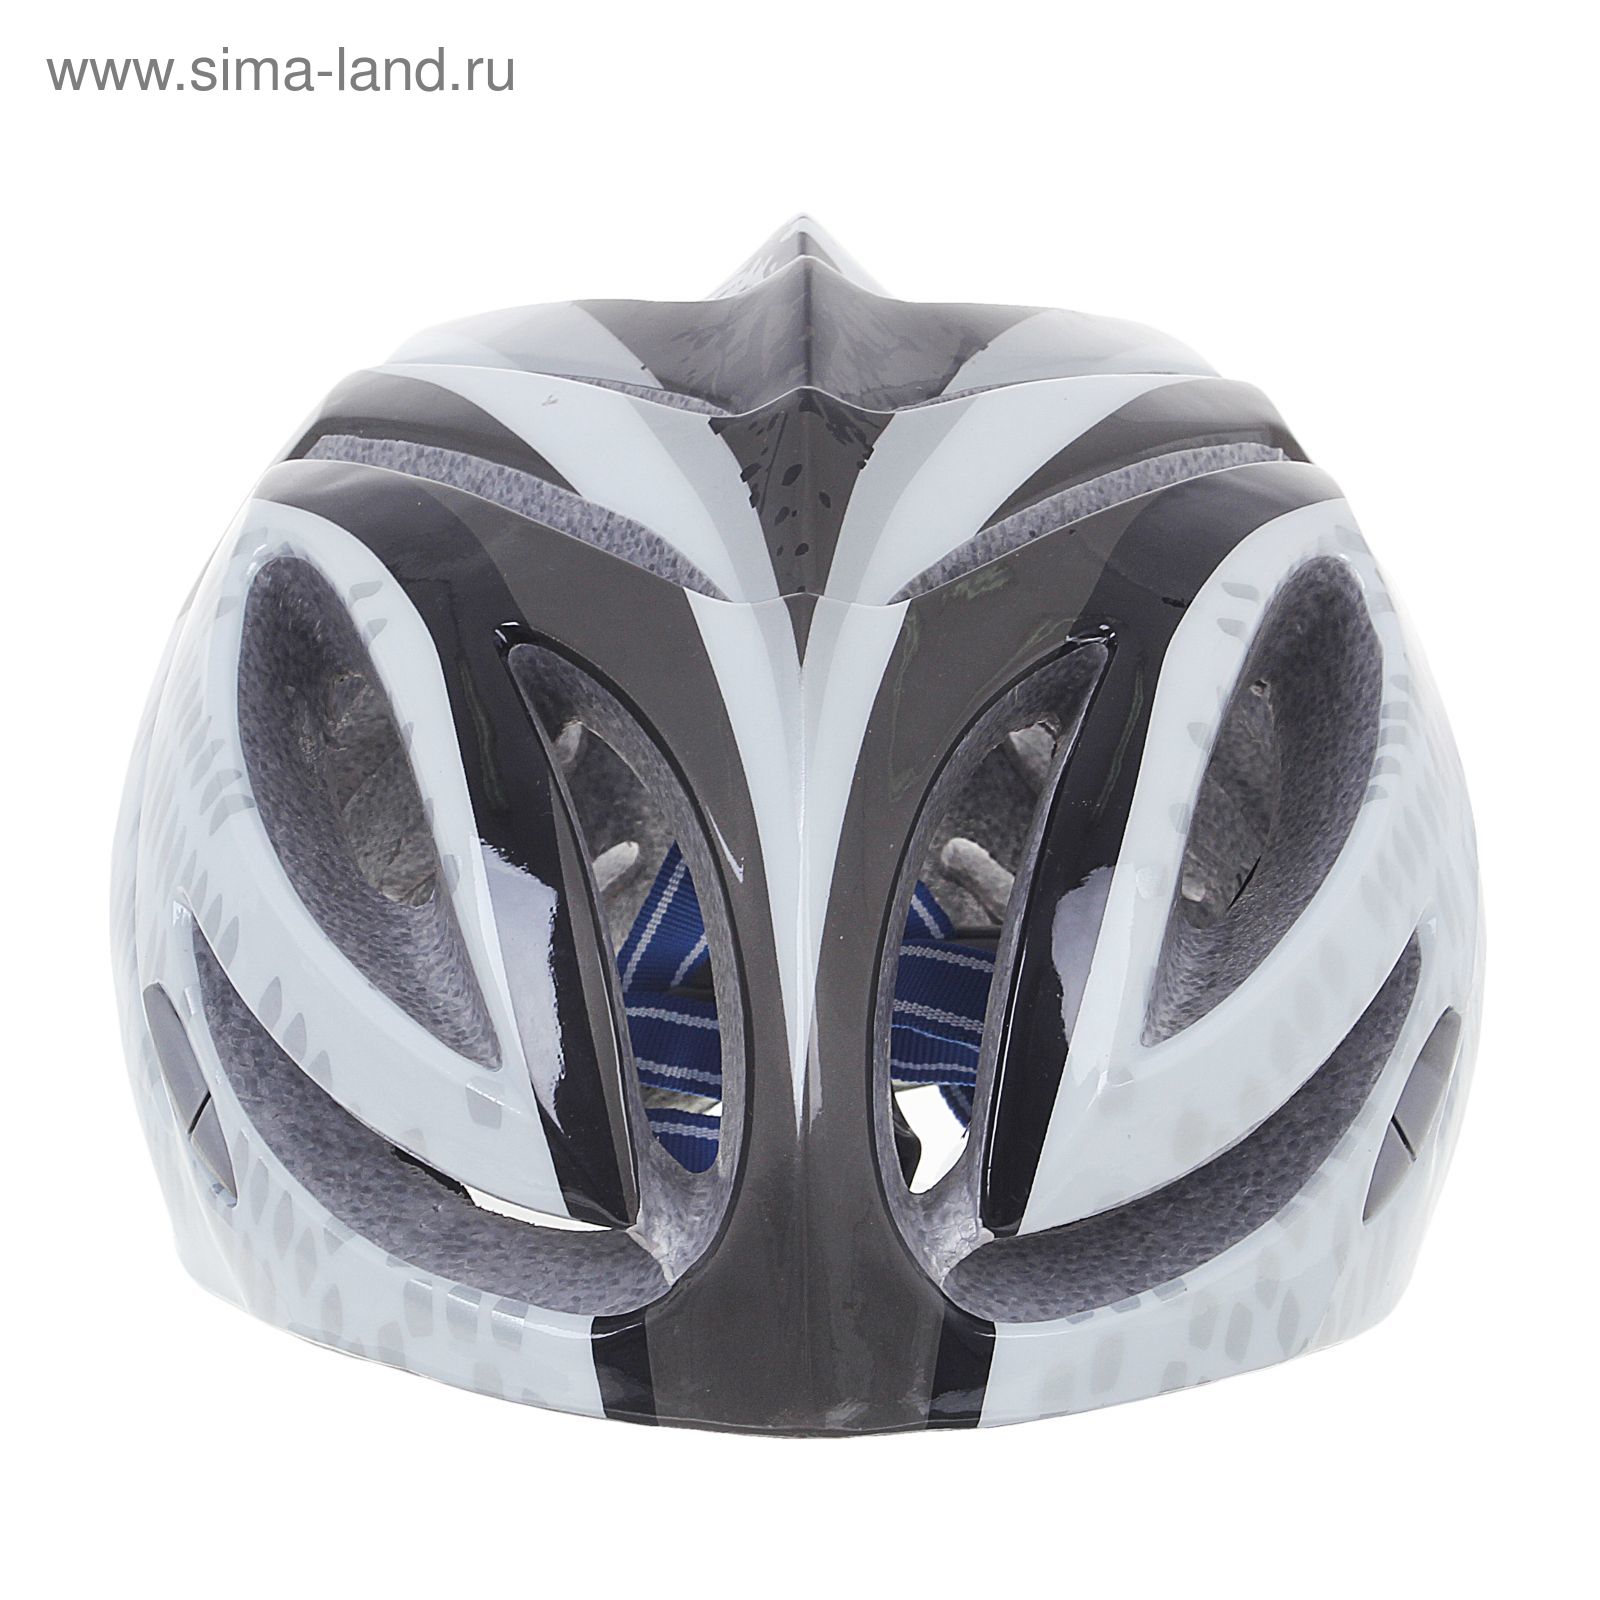 Шлем велосипедиста взрослый ОТ-T23, черно-белый, диаметр 54 см